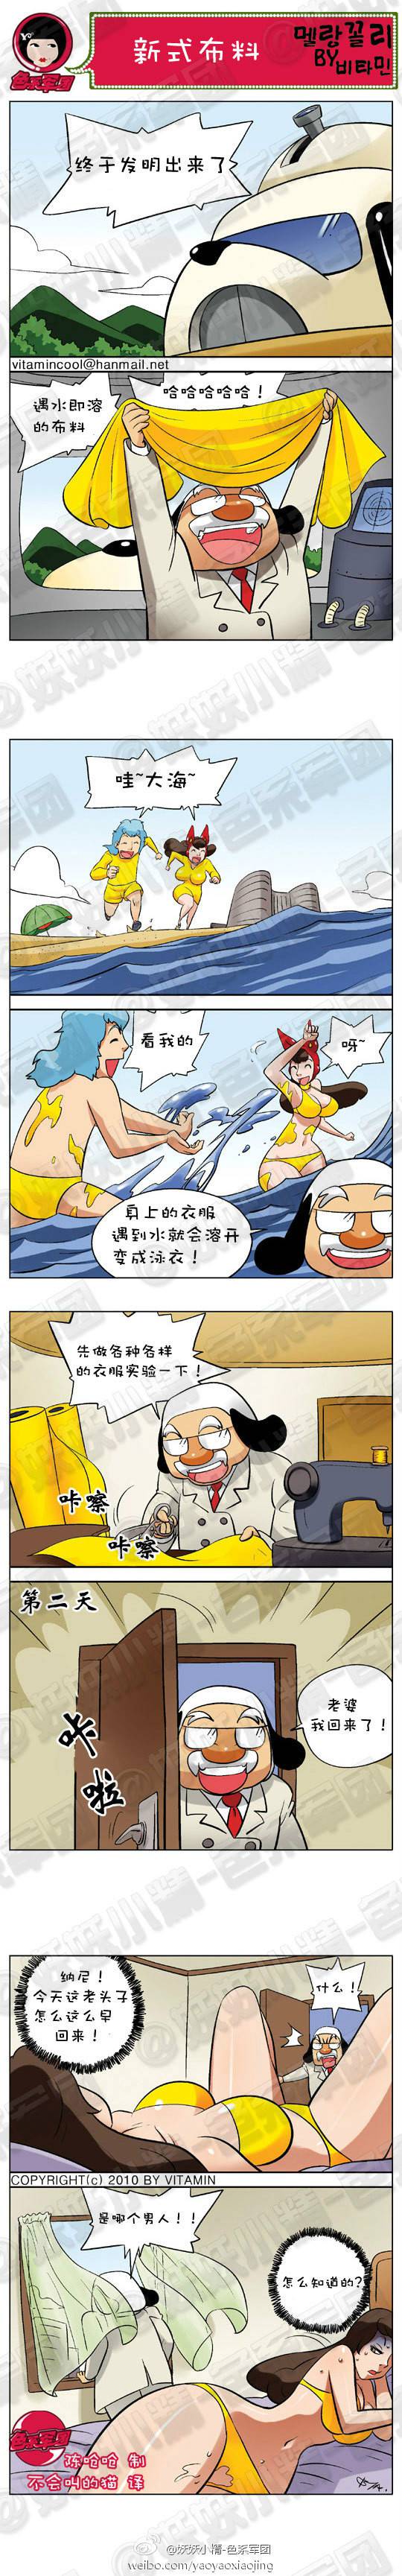 邪恶漫画爆笑囧图第264刊：发明新布料的大叔